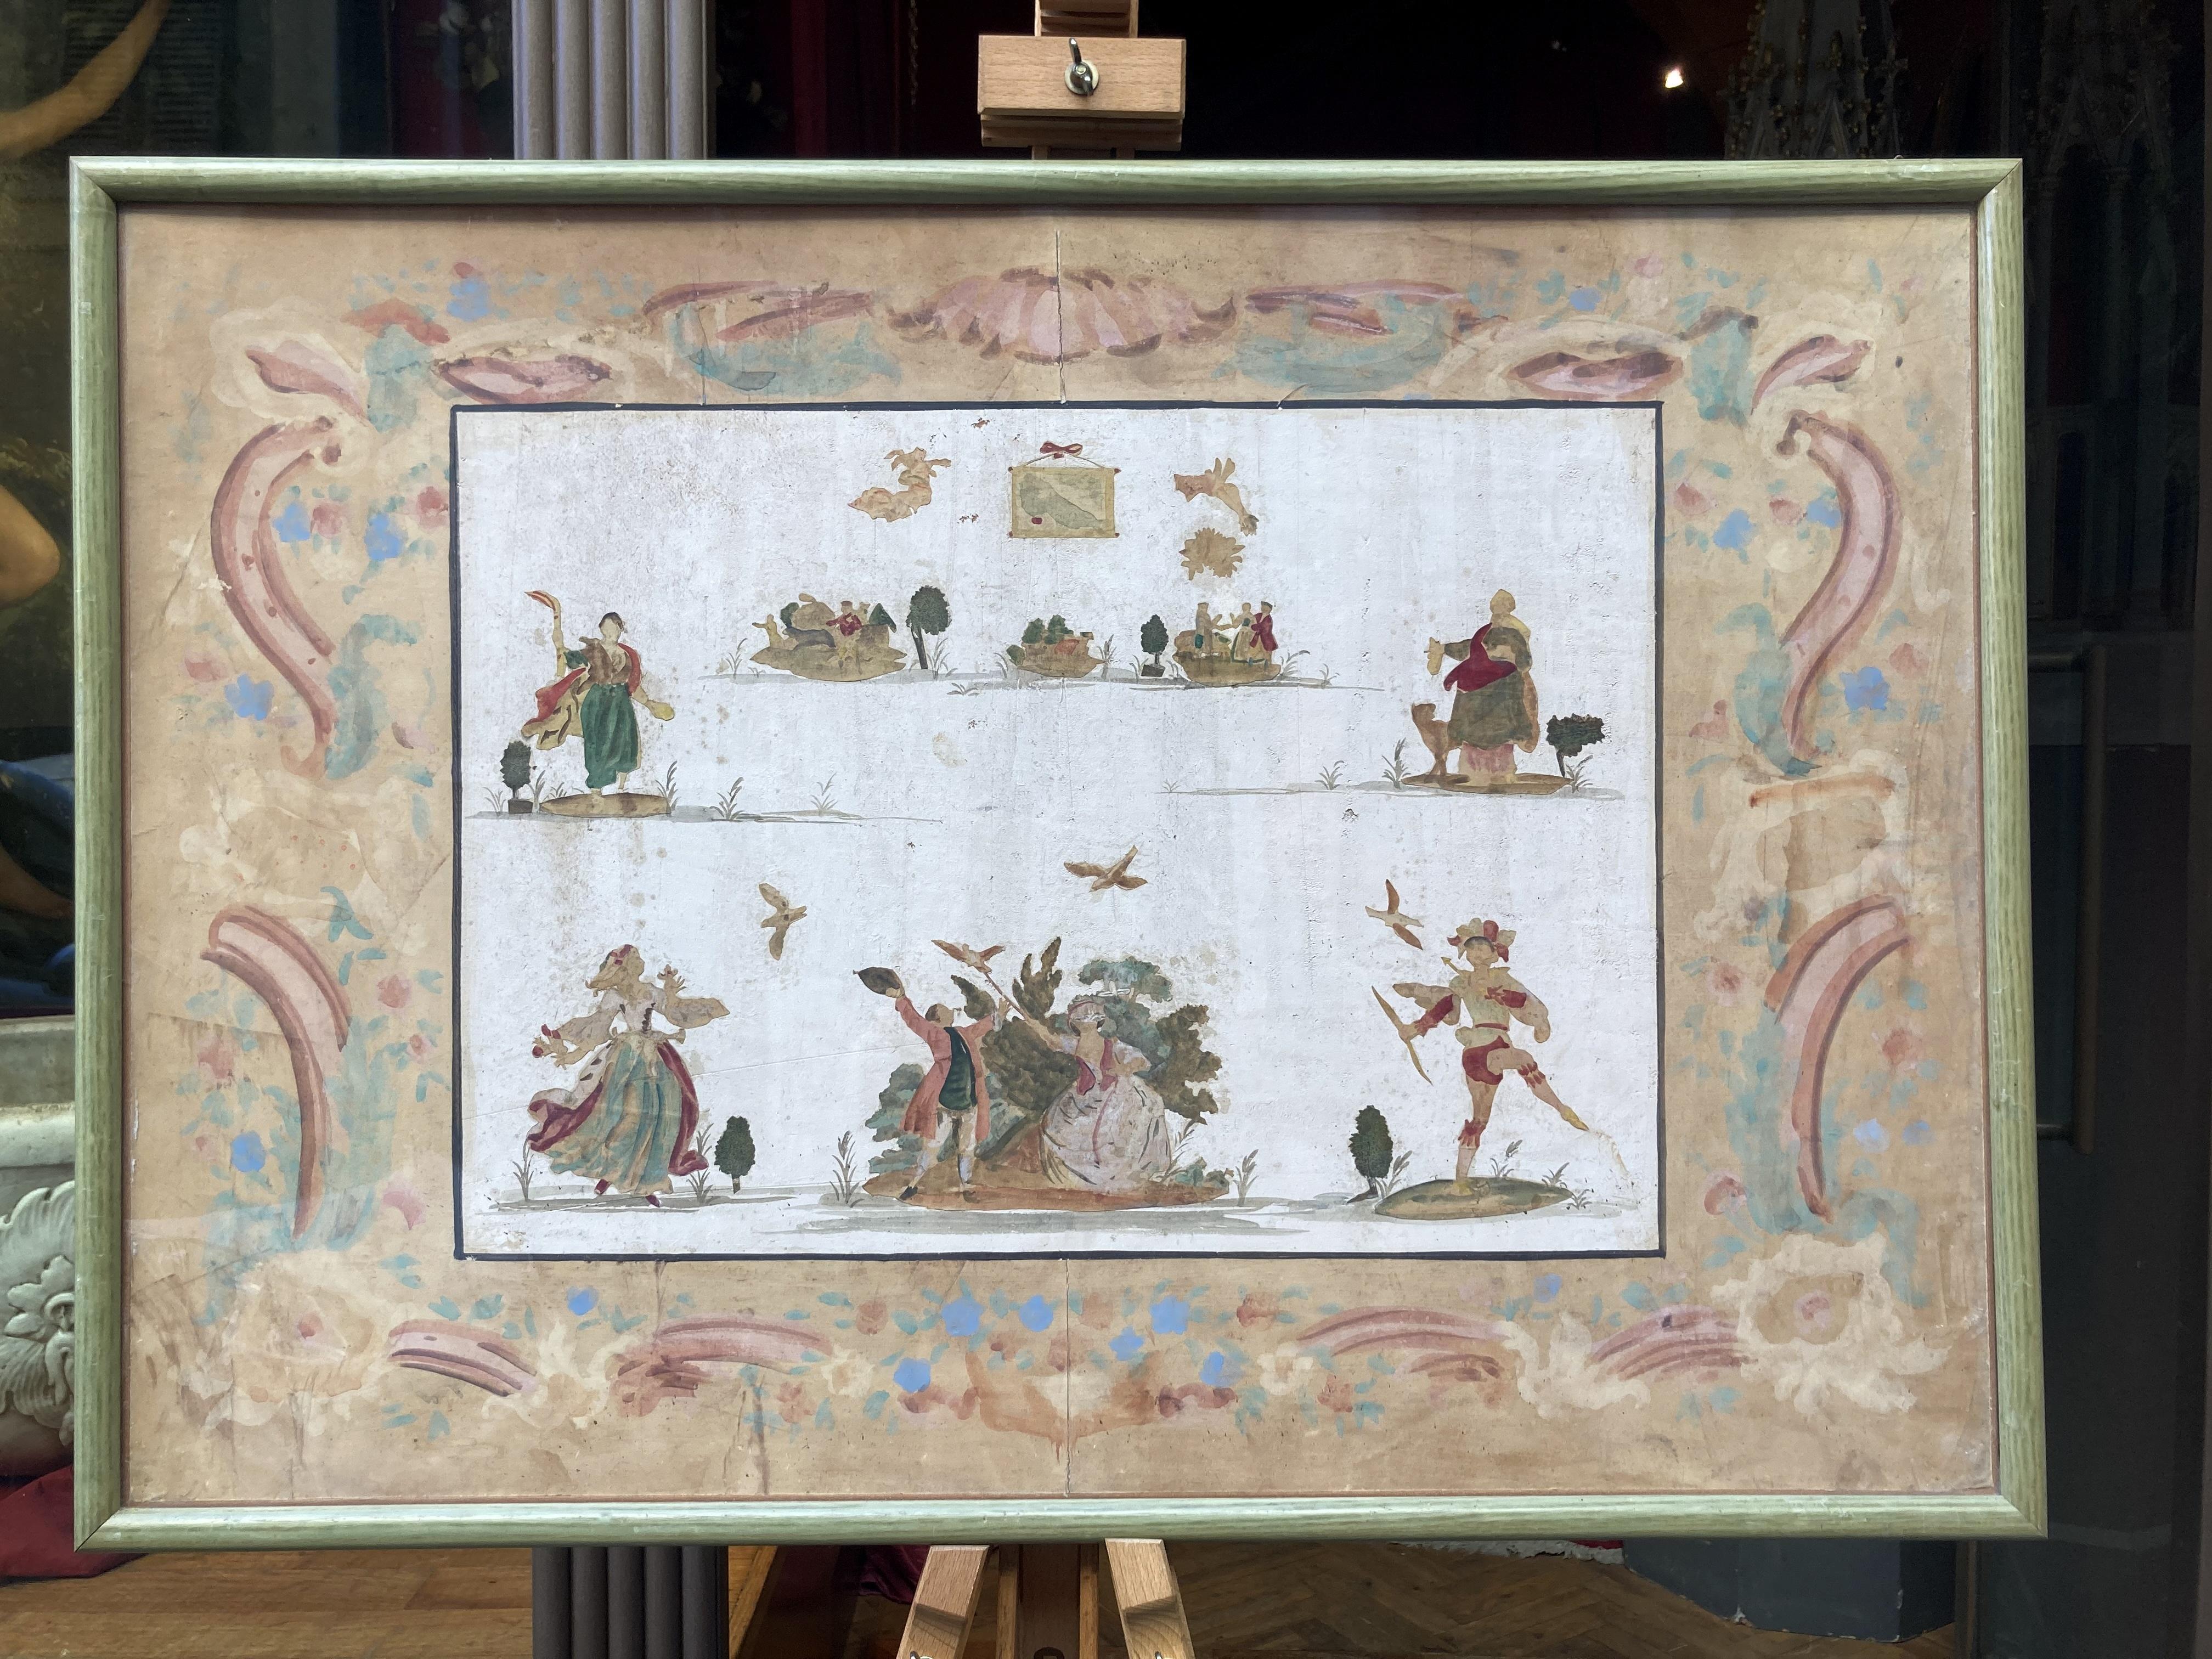 Dieser Satz von vier antiken 19. Jahrhundert italienischen gemischten Medien Malerei auf Papier Hand mit Gouache, Tempera und Aquarell gemacht, zeigt mehrere Zeichen Silhouetten in einem Theaterstück handeln.
Diese feinen Kunstwerke sind sehr